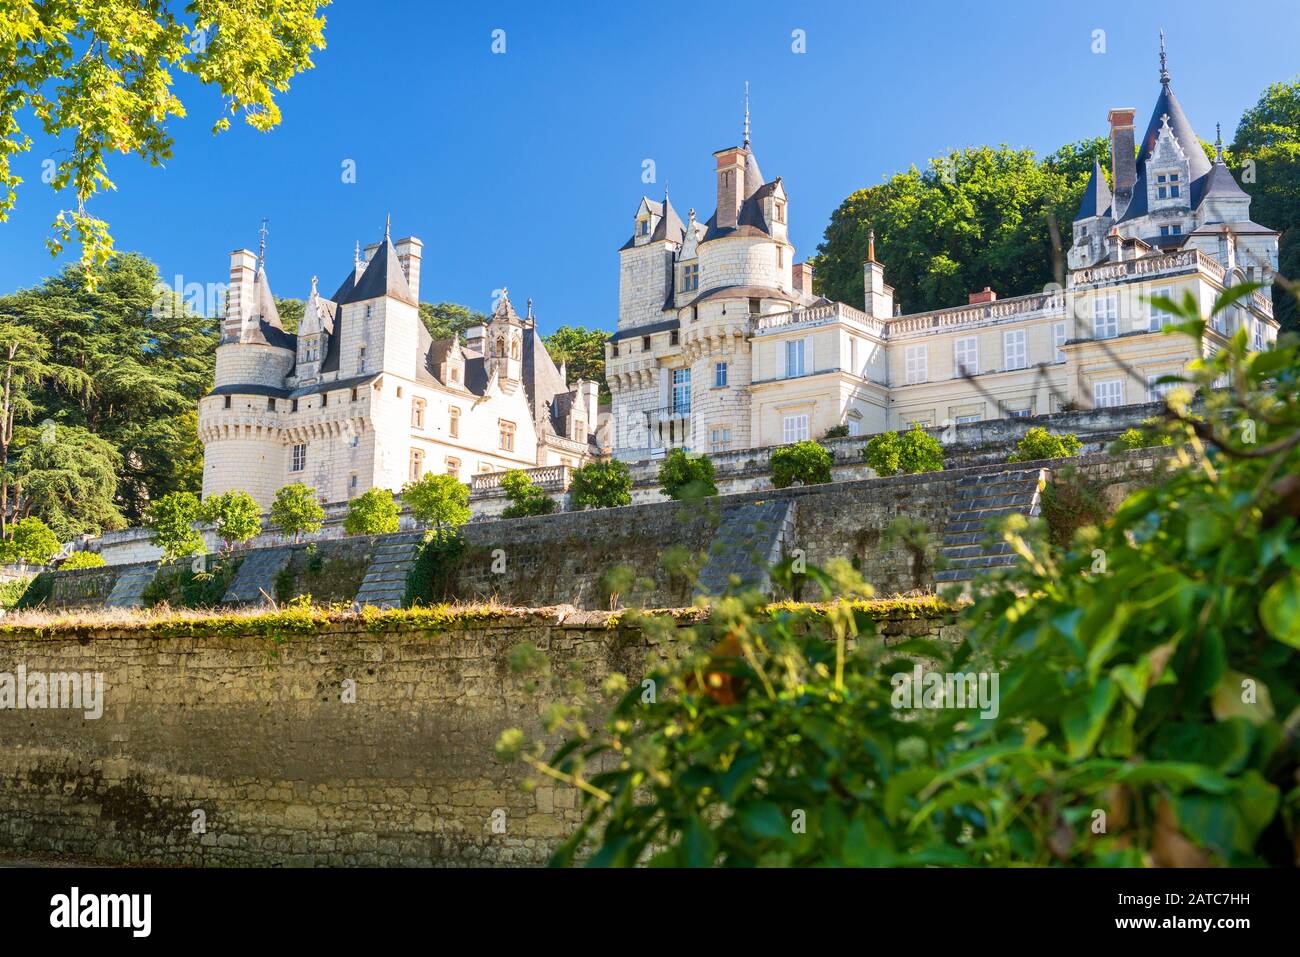 El castillo de Usse, Francia. Este castillo está situado en el valle del Loira y fue construido en el siglo 15. Foto de stock